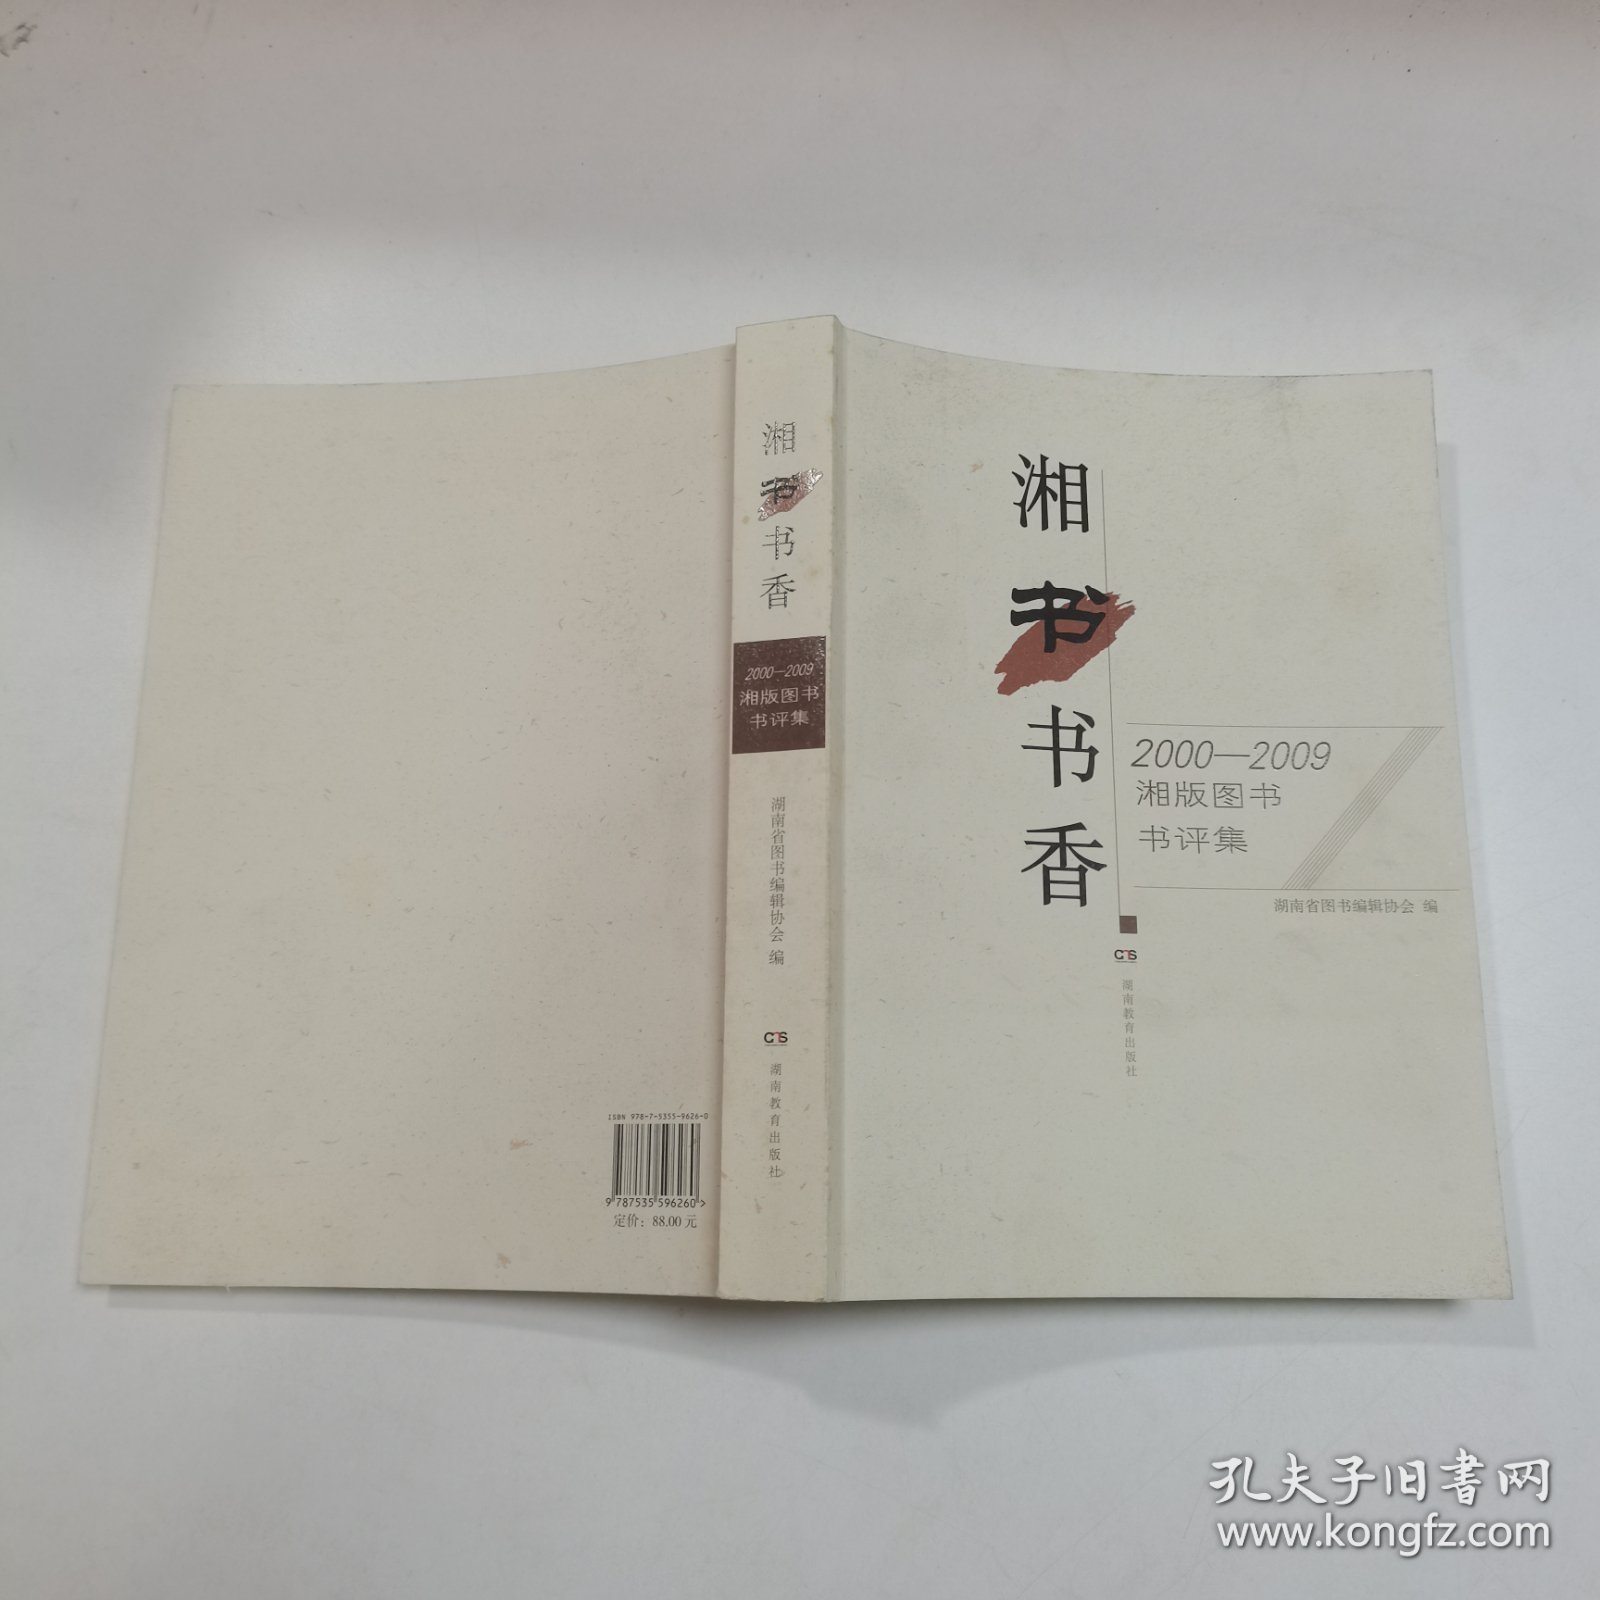 湘书书香:2000—2009湘版图书书评集